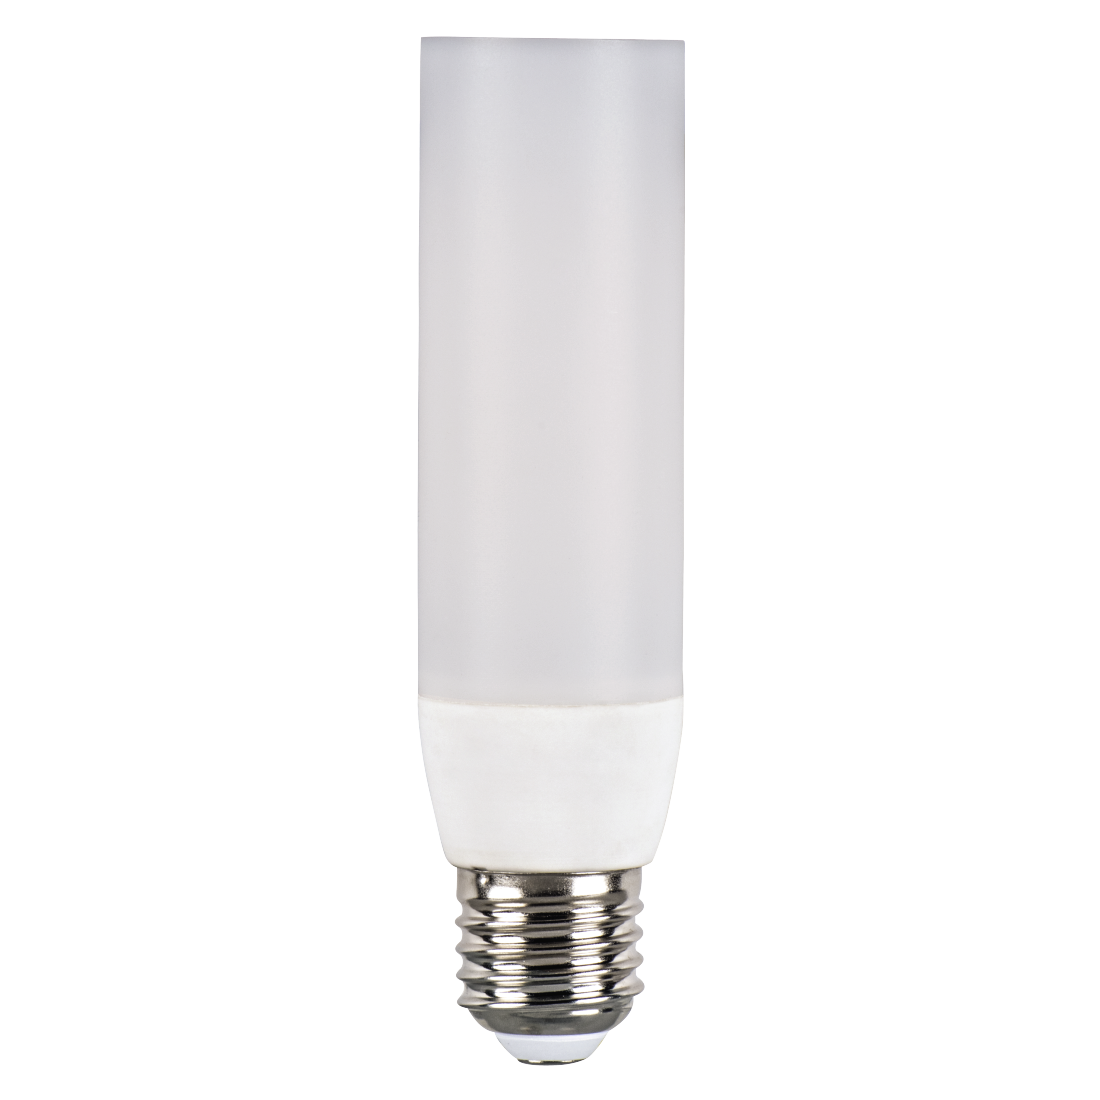 abx High-Res Image - Xavax, Ampoule LED, E27, 470 lm rempl.ampoule tube 40 W T37, blanc chaud